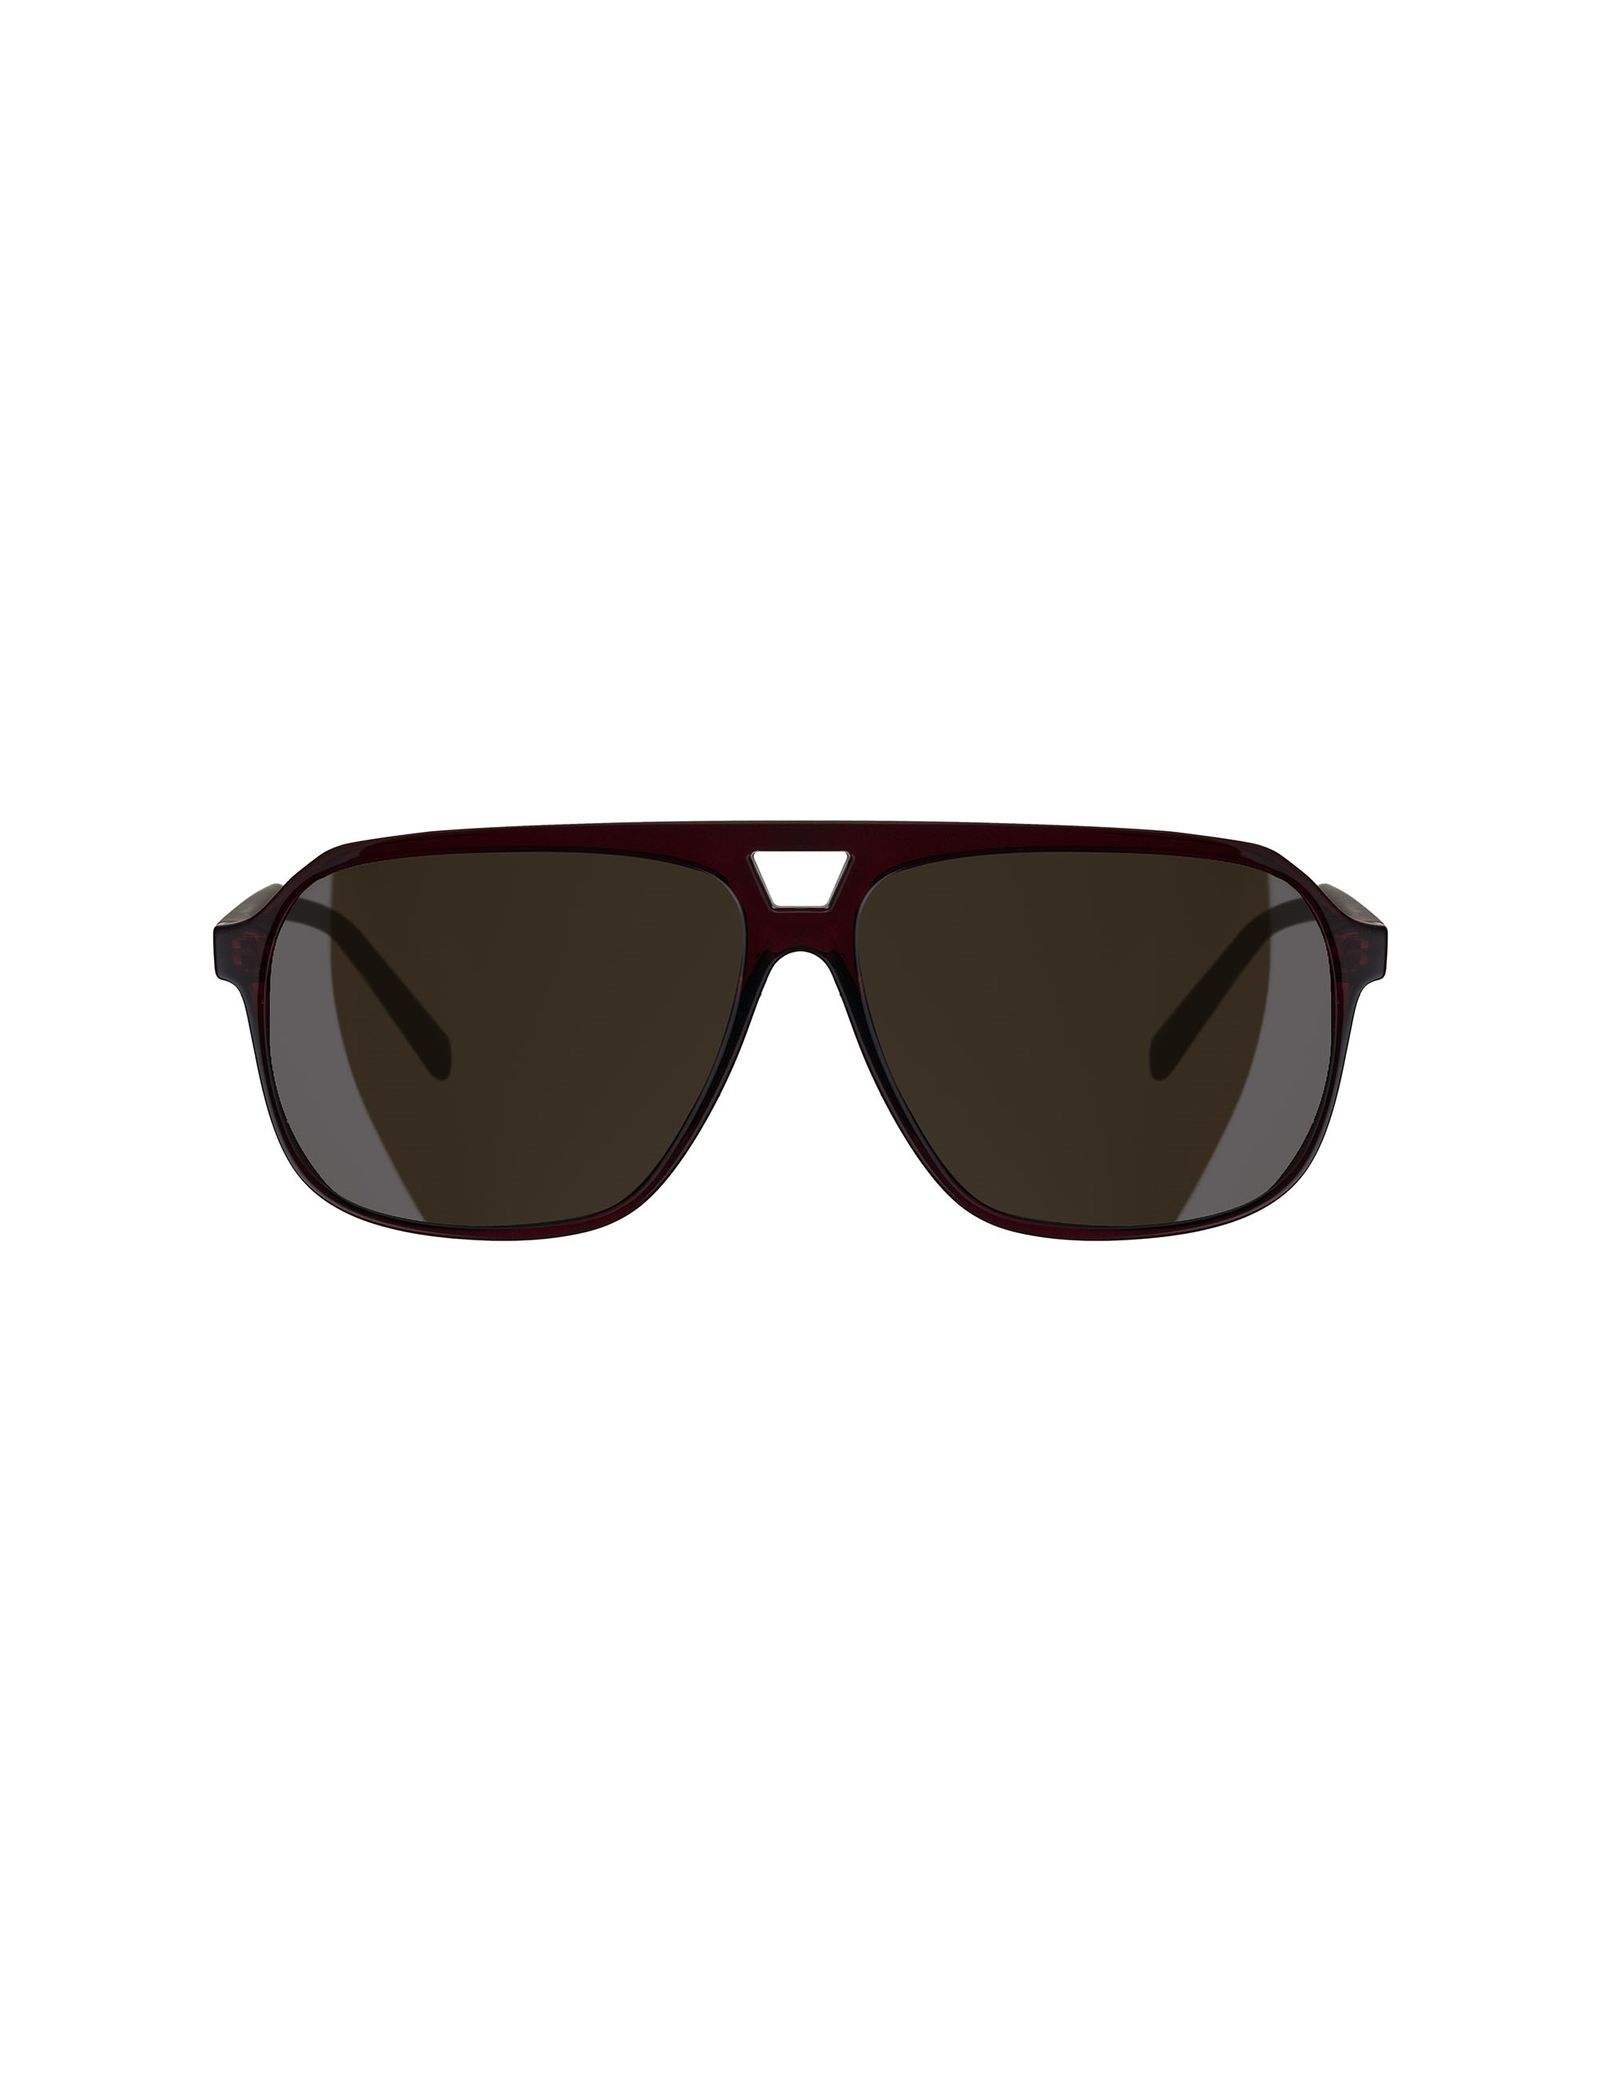 عینک آفتابی زنانه تد بیکر مدل TB150420058 - قهوه ای - 2